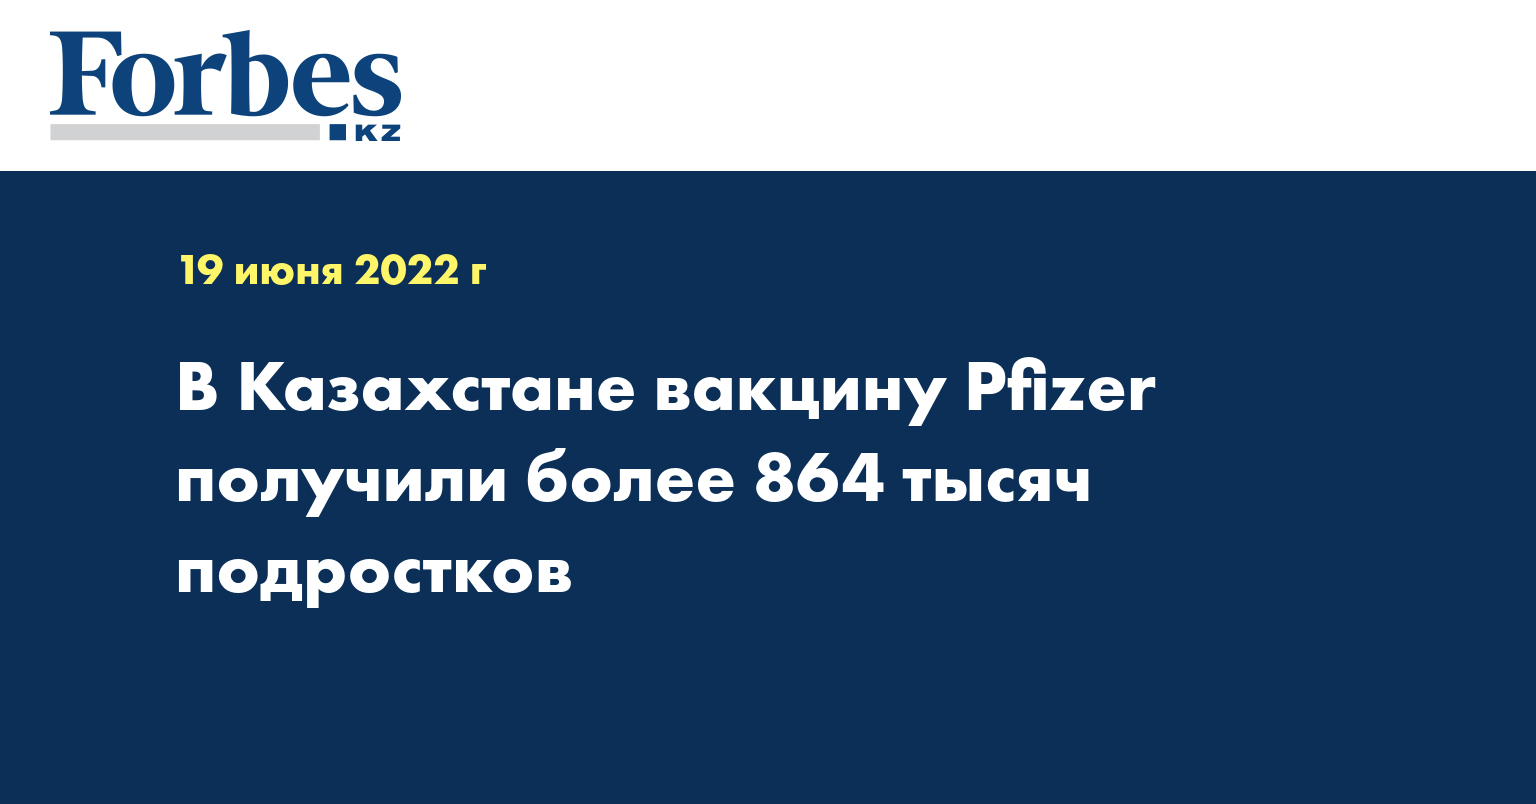 В Казахстане вакцину Pfizer получили более 864 тысячи подростков